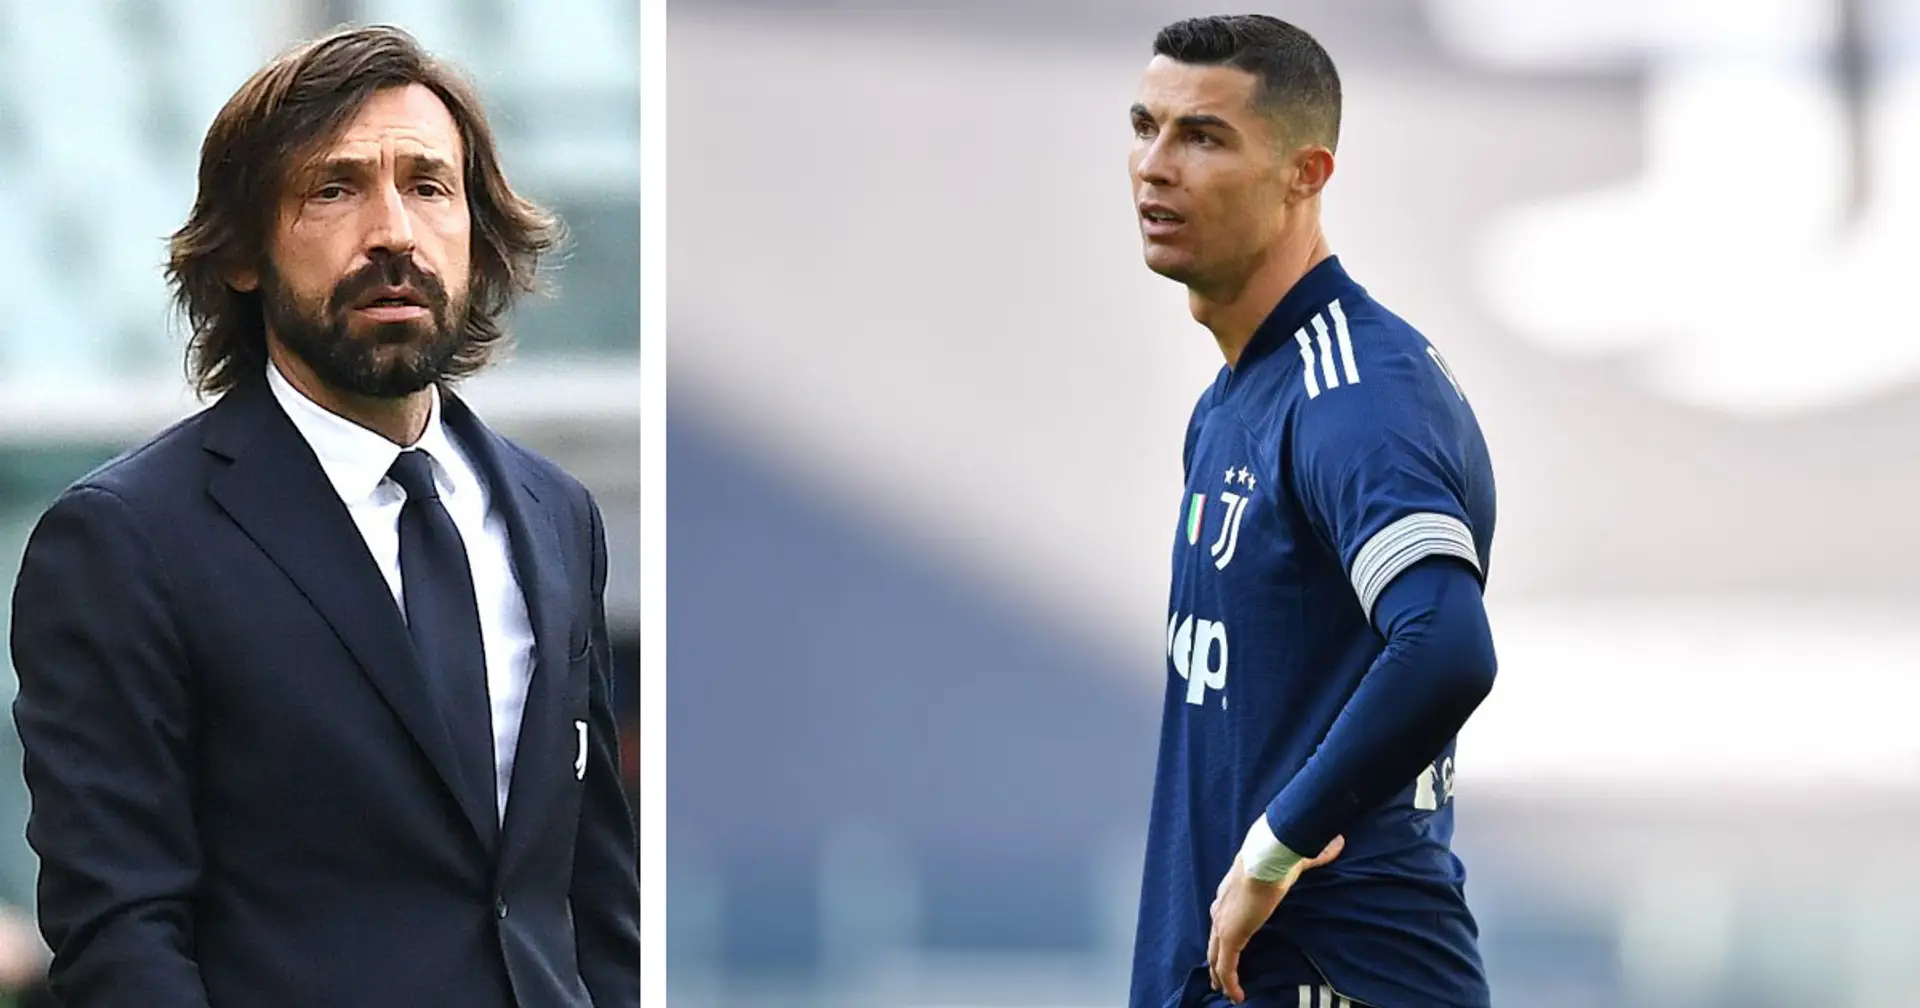 "Ha un problemino",  Pirlo annuncia in conferenza l'assenza di Cristiano Ronaldo contro l'Atalanta